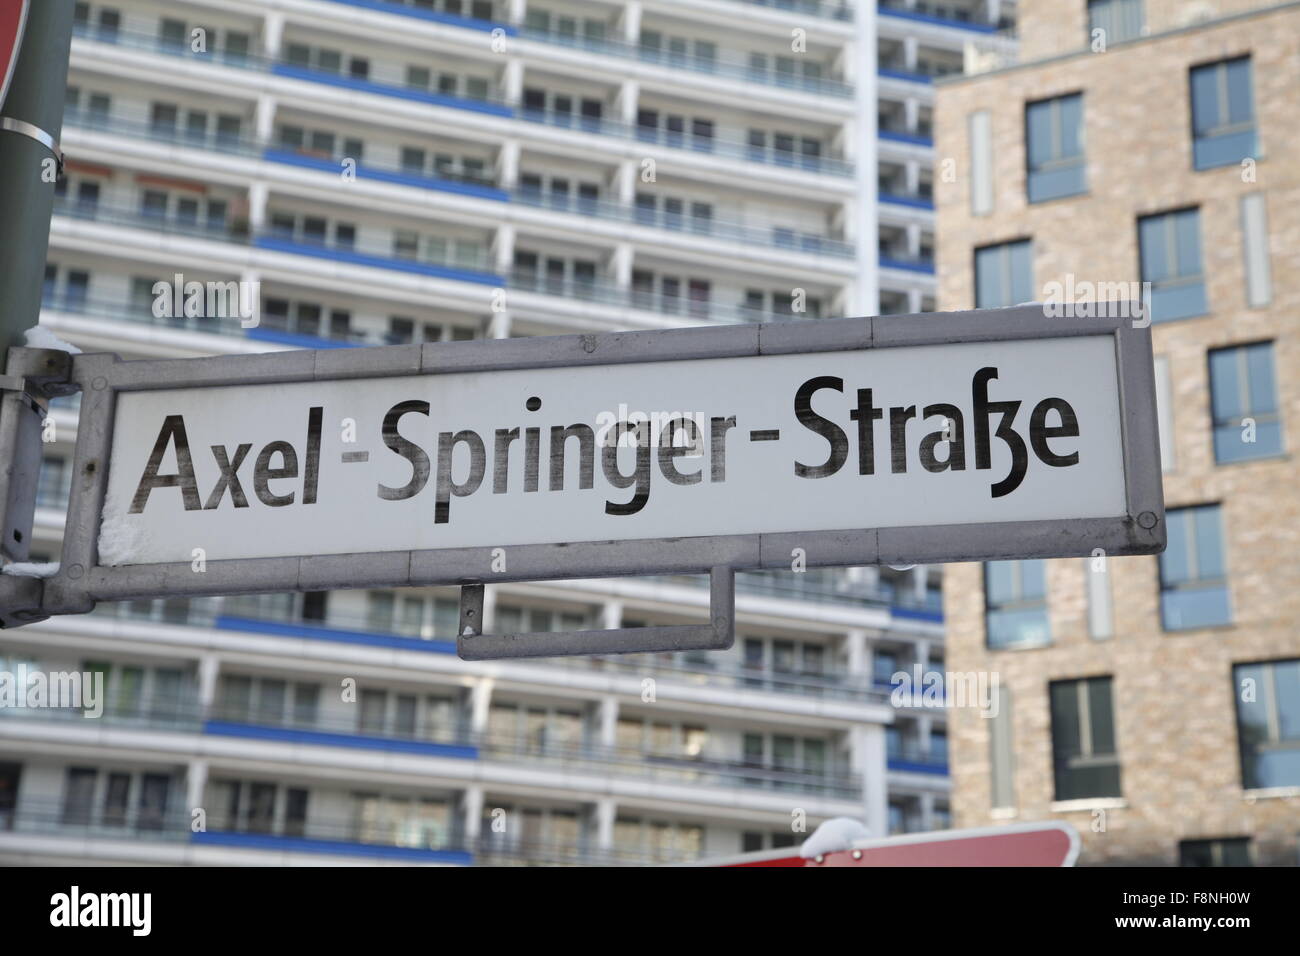 axel-springer straße road sign in berlin Stock Photo - Alamy